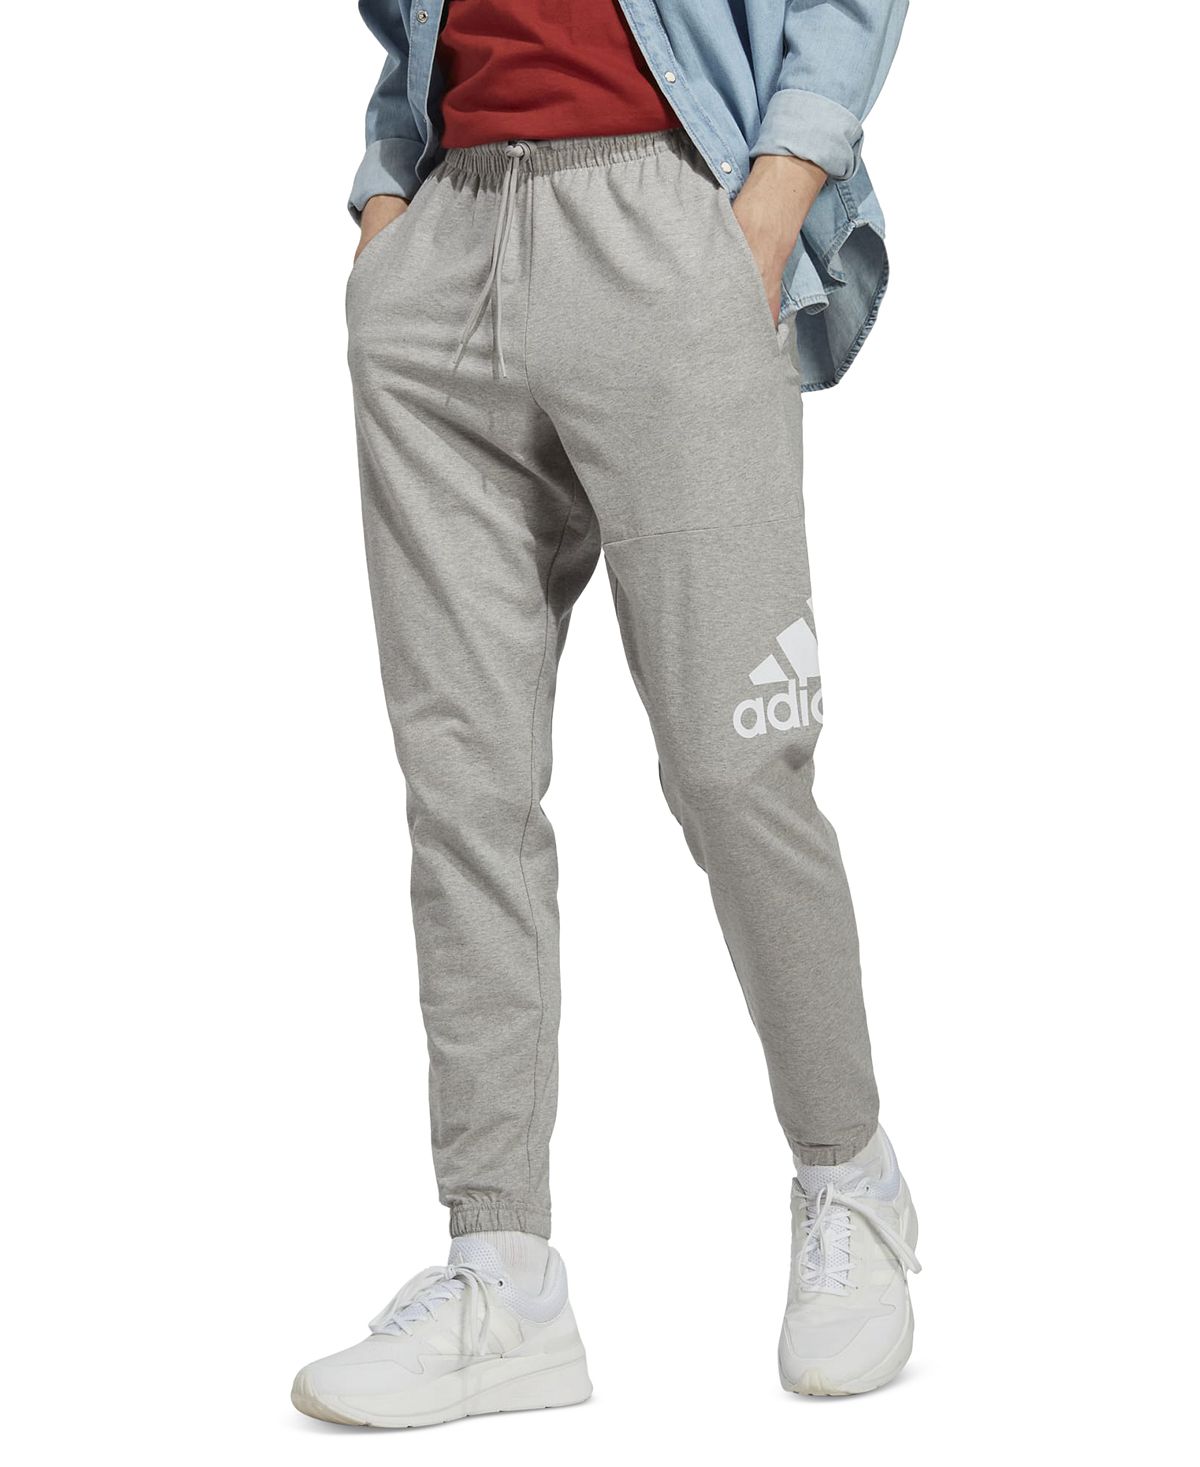 Мужские спортивные джоггеры Essentials из одинарного джерси с зауженным значком adidas брюки джоггеры adidas размер 40 розовый